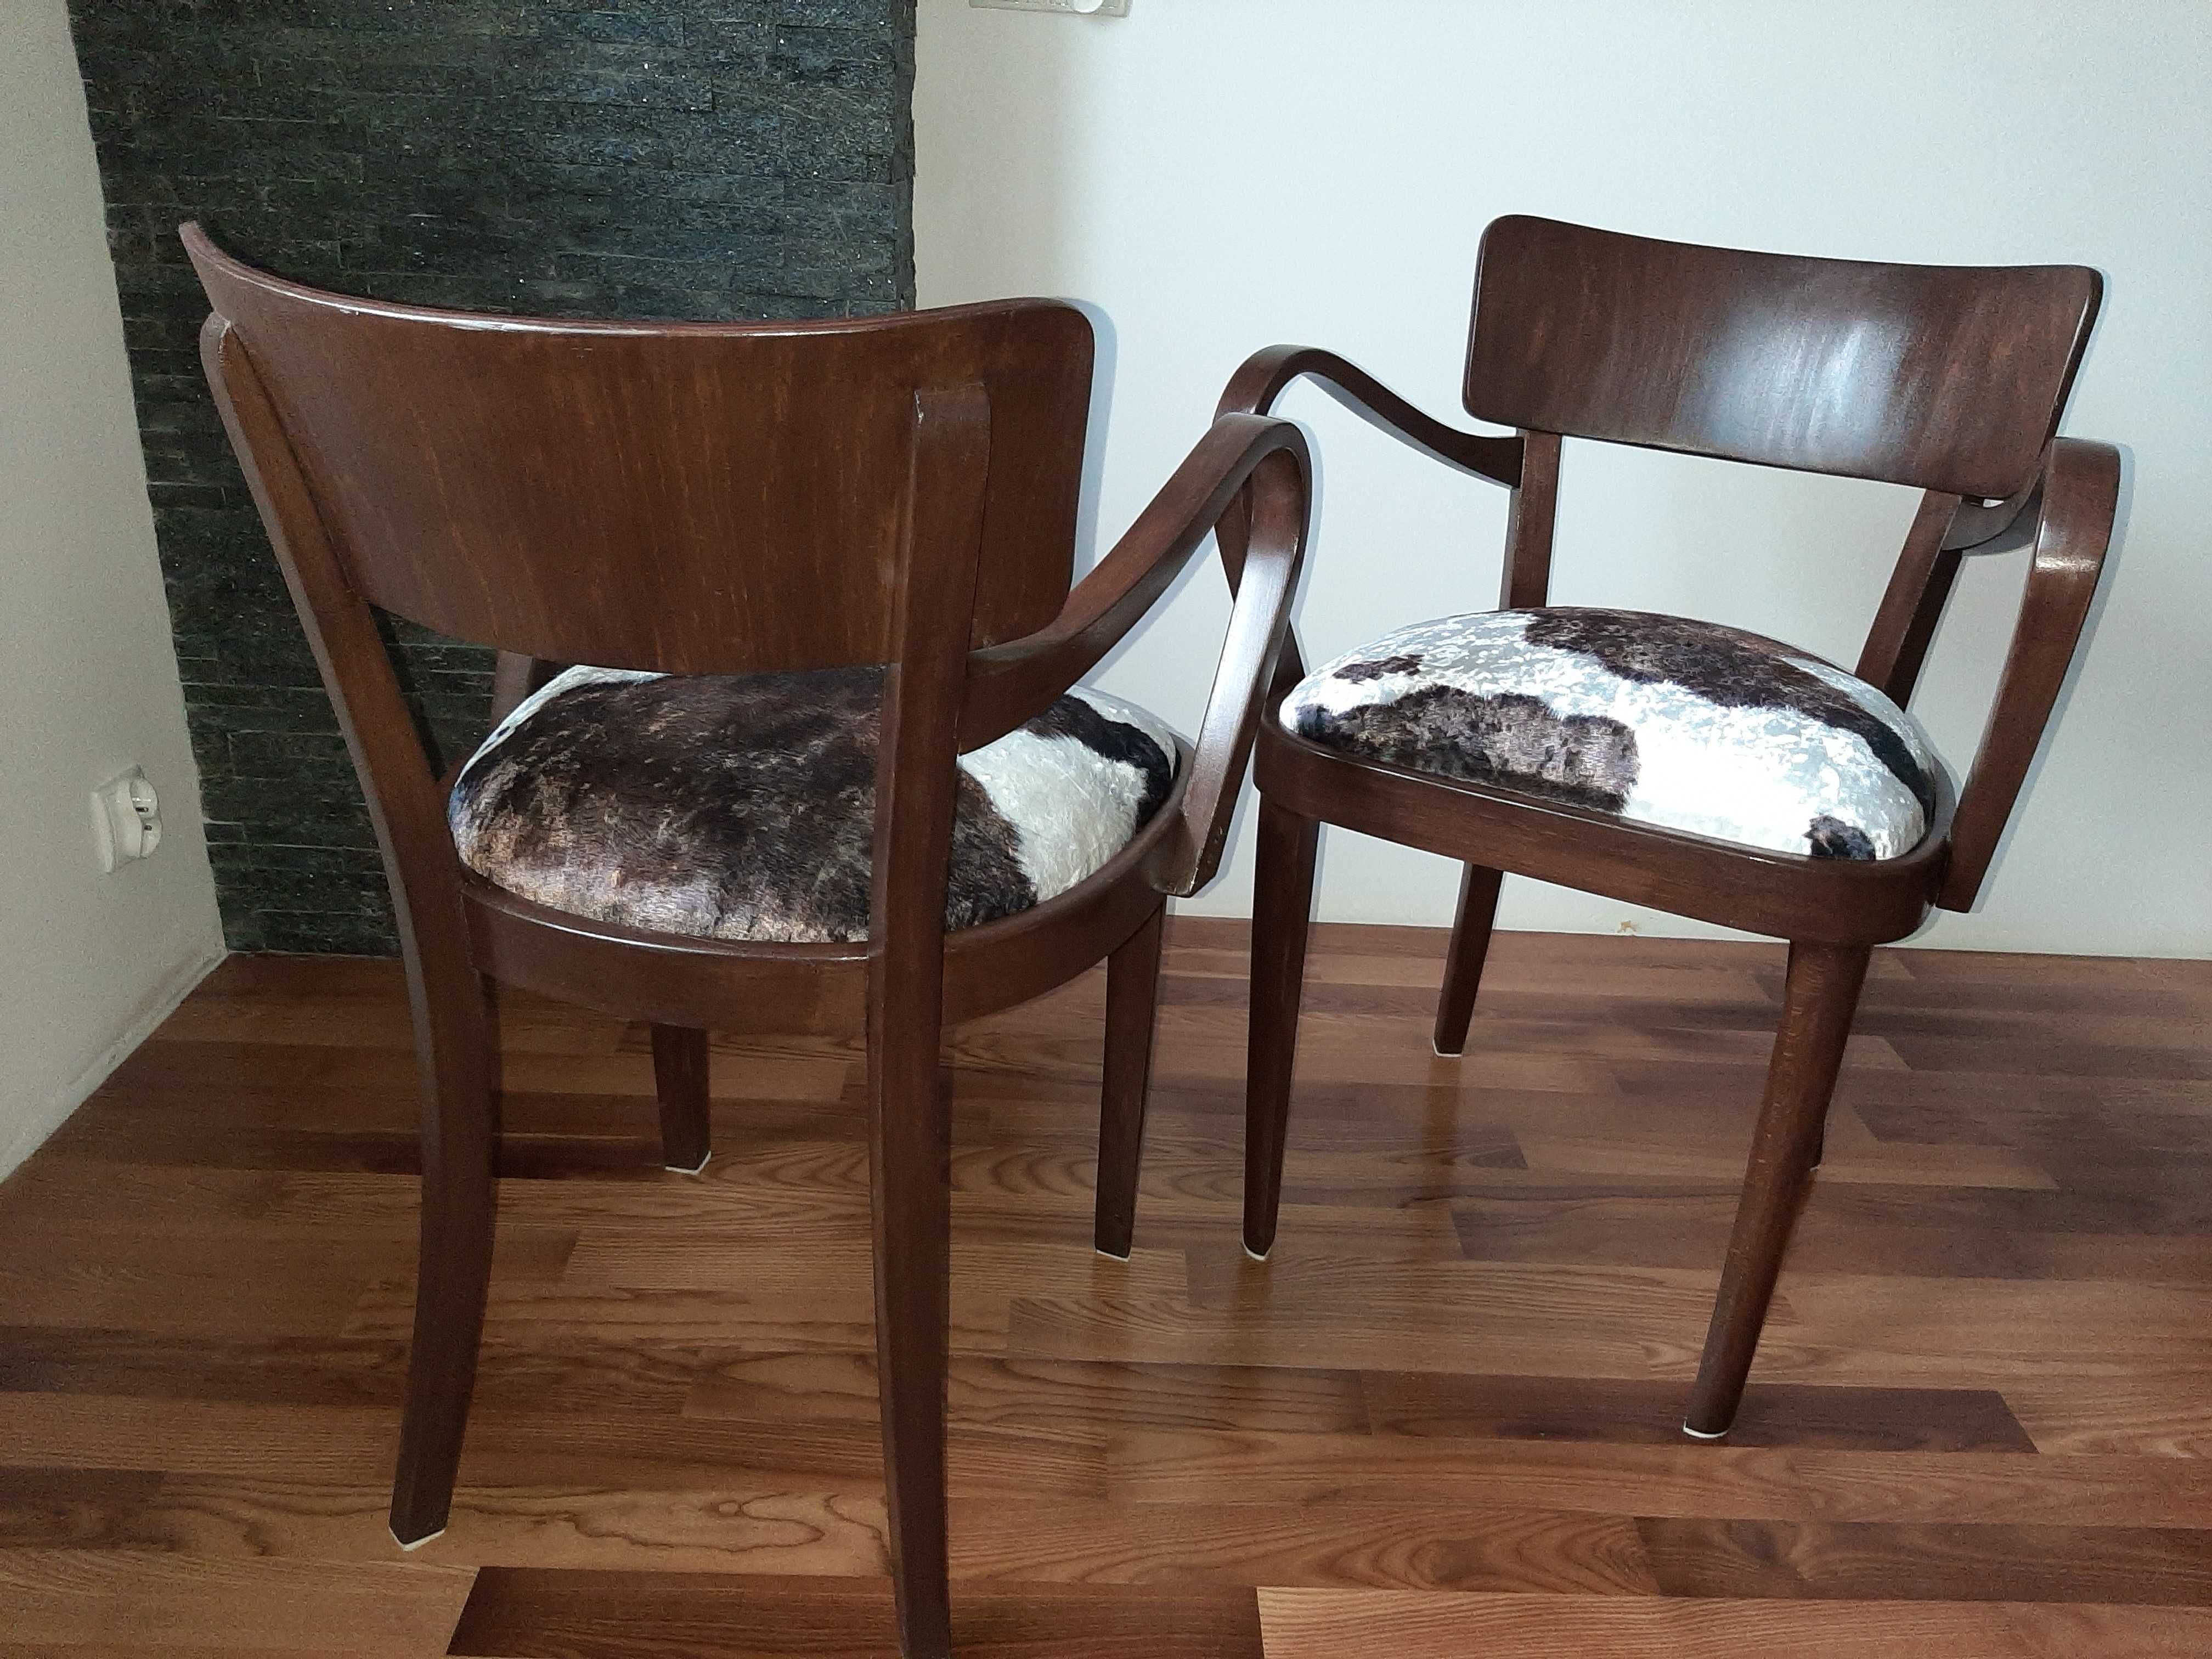 Dwa fotele/krzesła w stylu art deco.